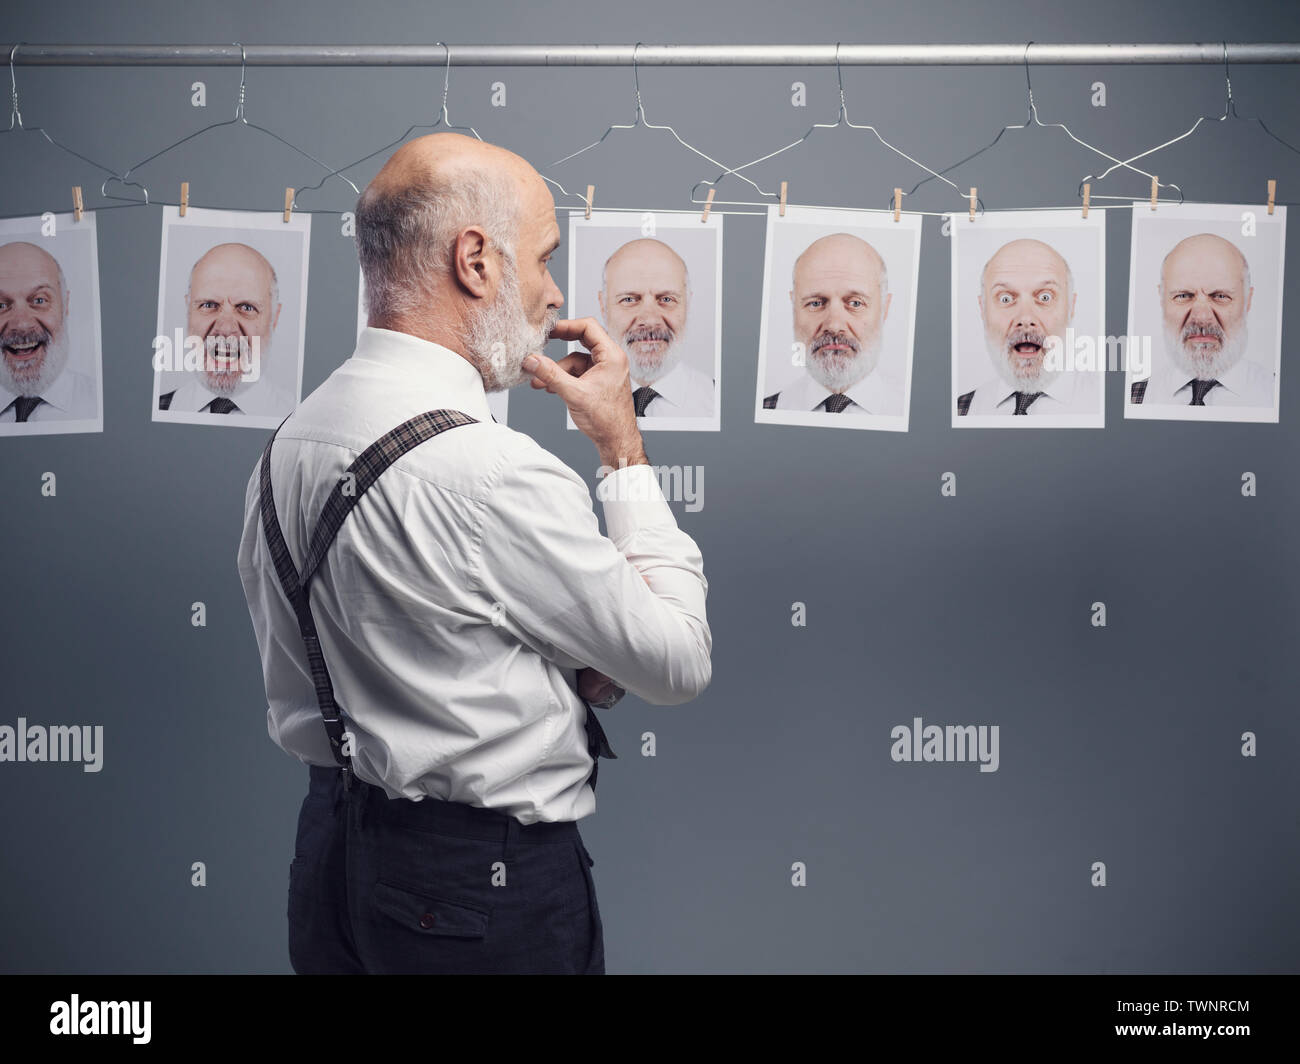 Reifen Geschäftsmann an seinem multiple Persönlichkeiten und Ausdrücke starrte auf eine Sammlung von hängenden Porträts: verstand Selbstanalyse und Emotionen Konzept Stockfoto